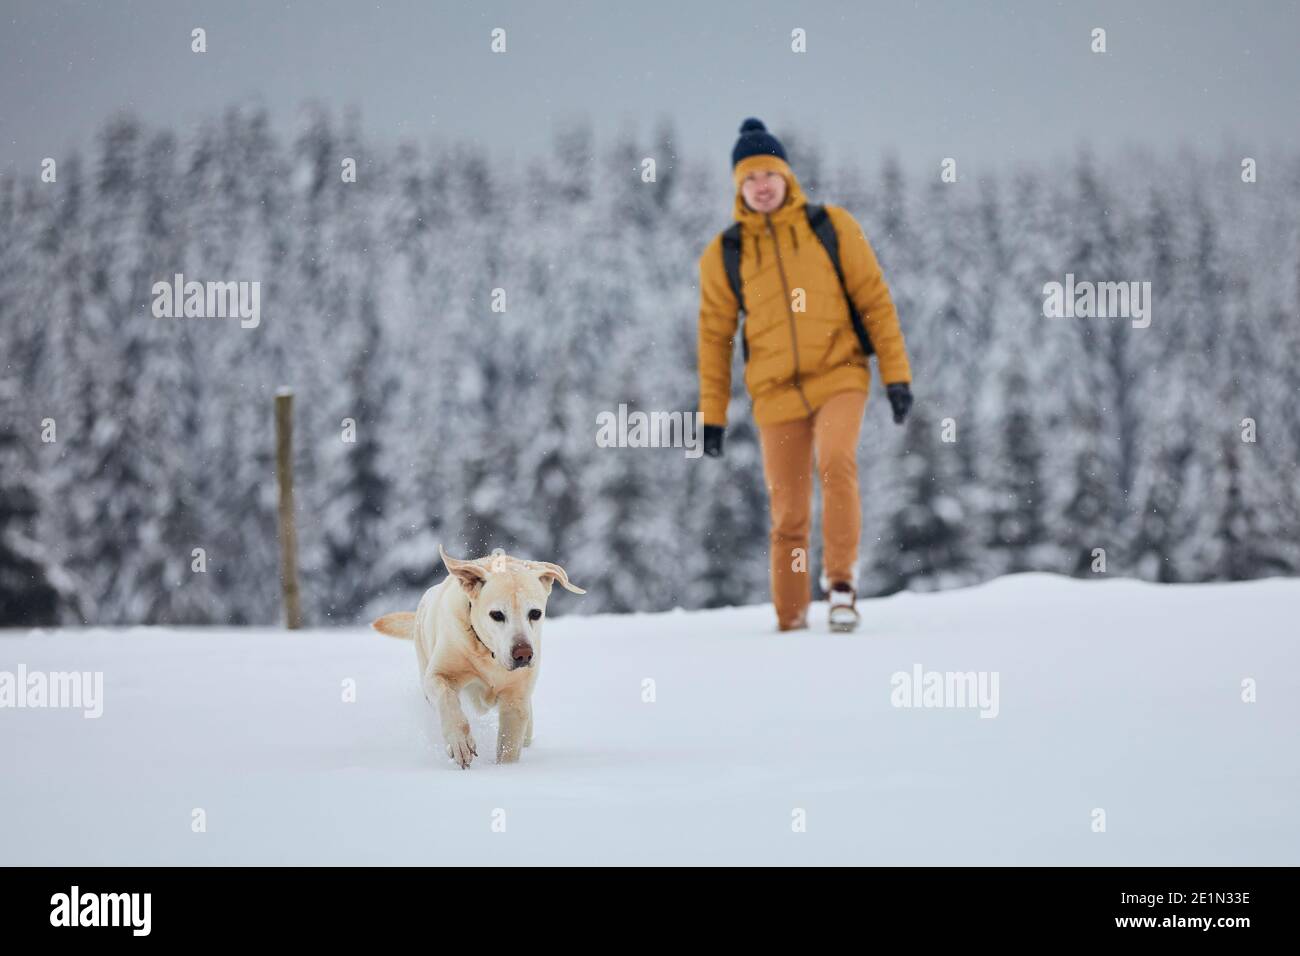 Jeune homme avec chien dans la nature d'hiver. Labrador retriever courir dans la neige contre la forêt. Jizera, République Tchèque Banque D'Images